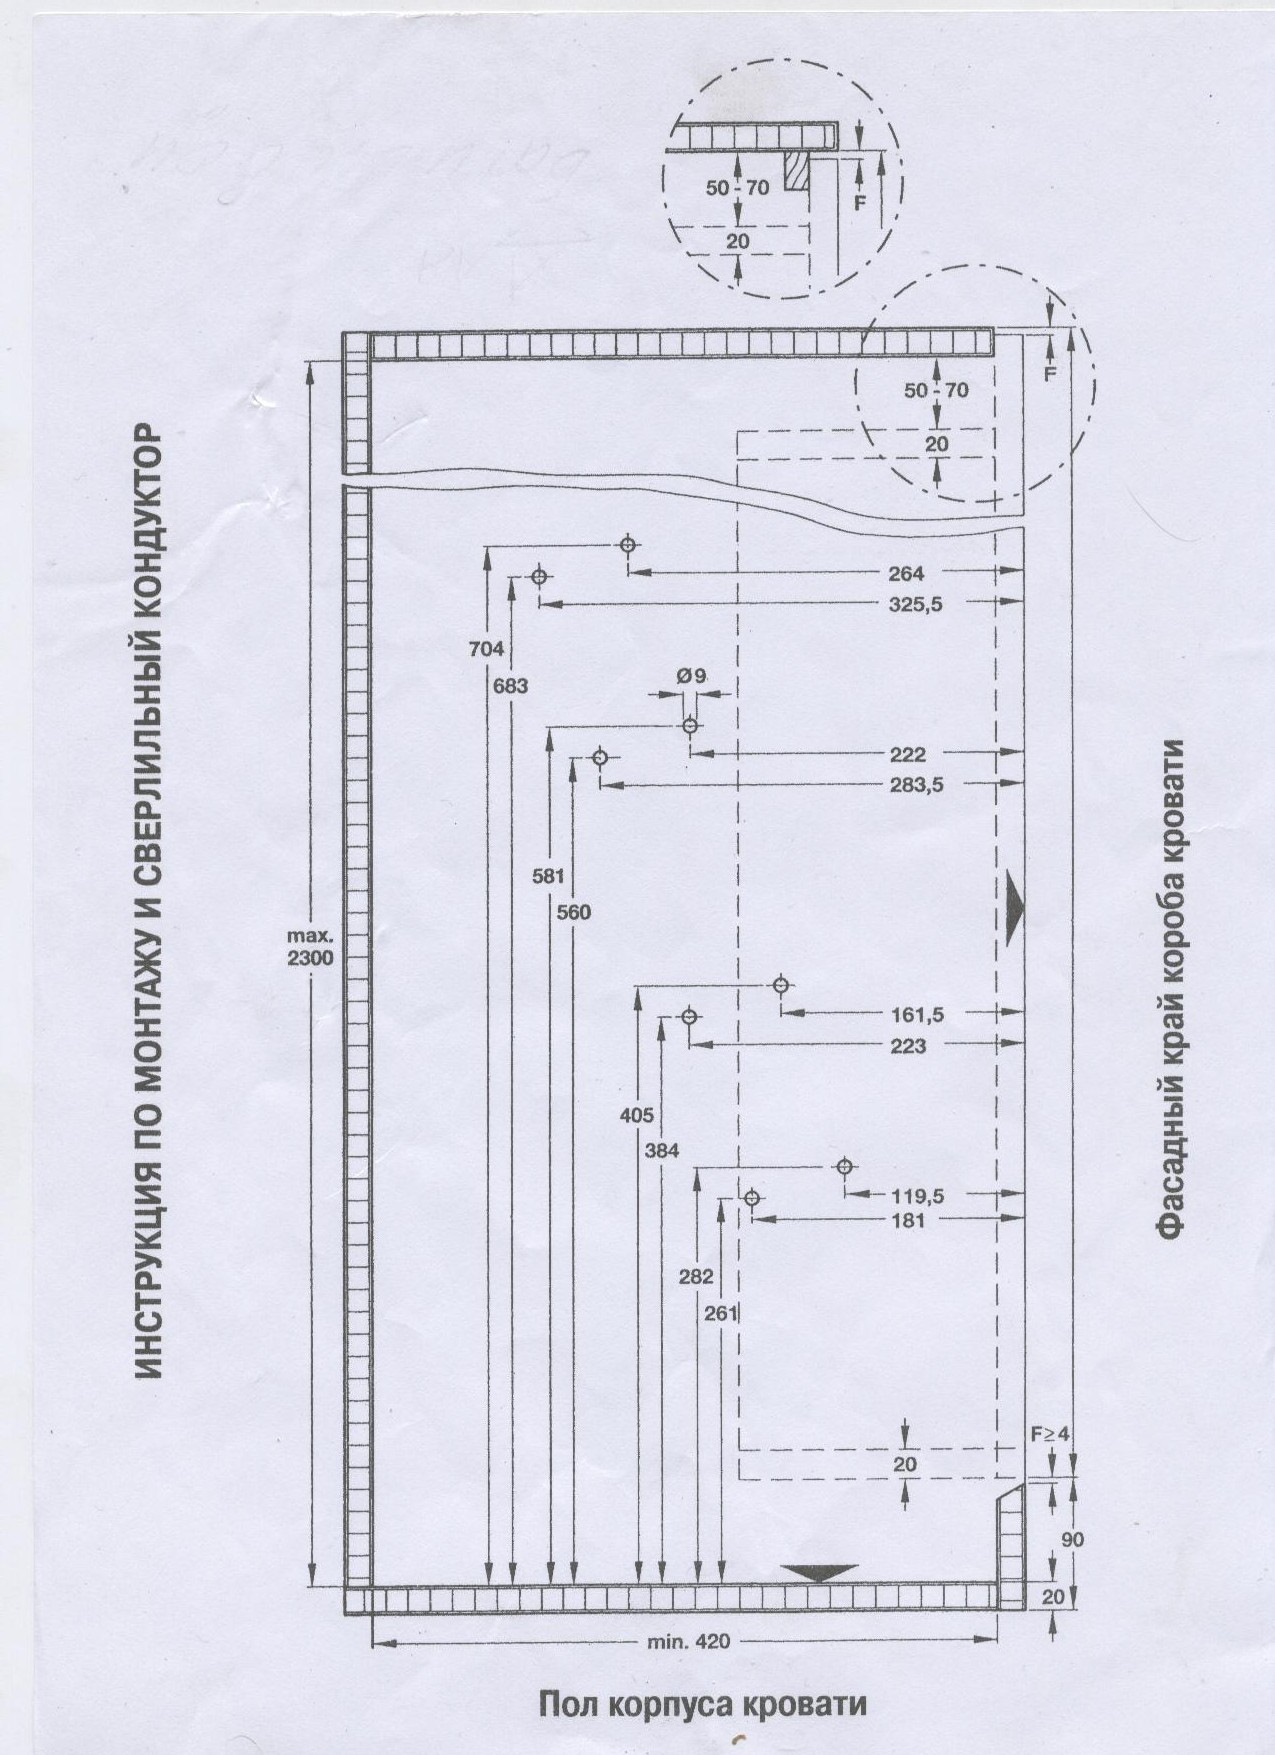 Подъемный механизм 582 схема монтажа